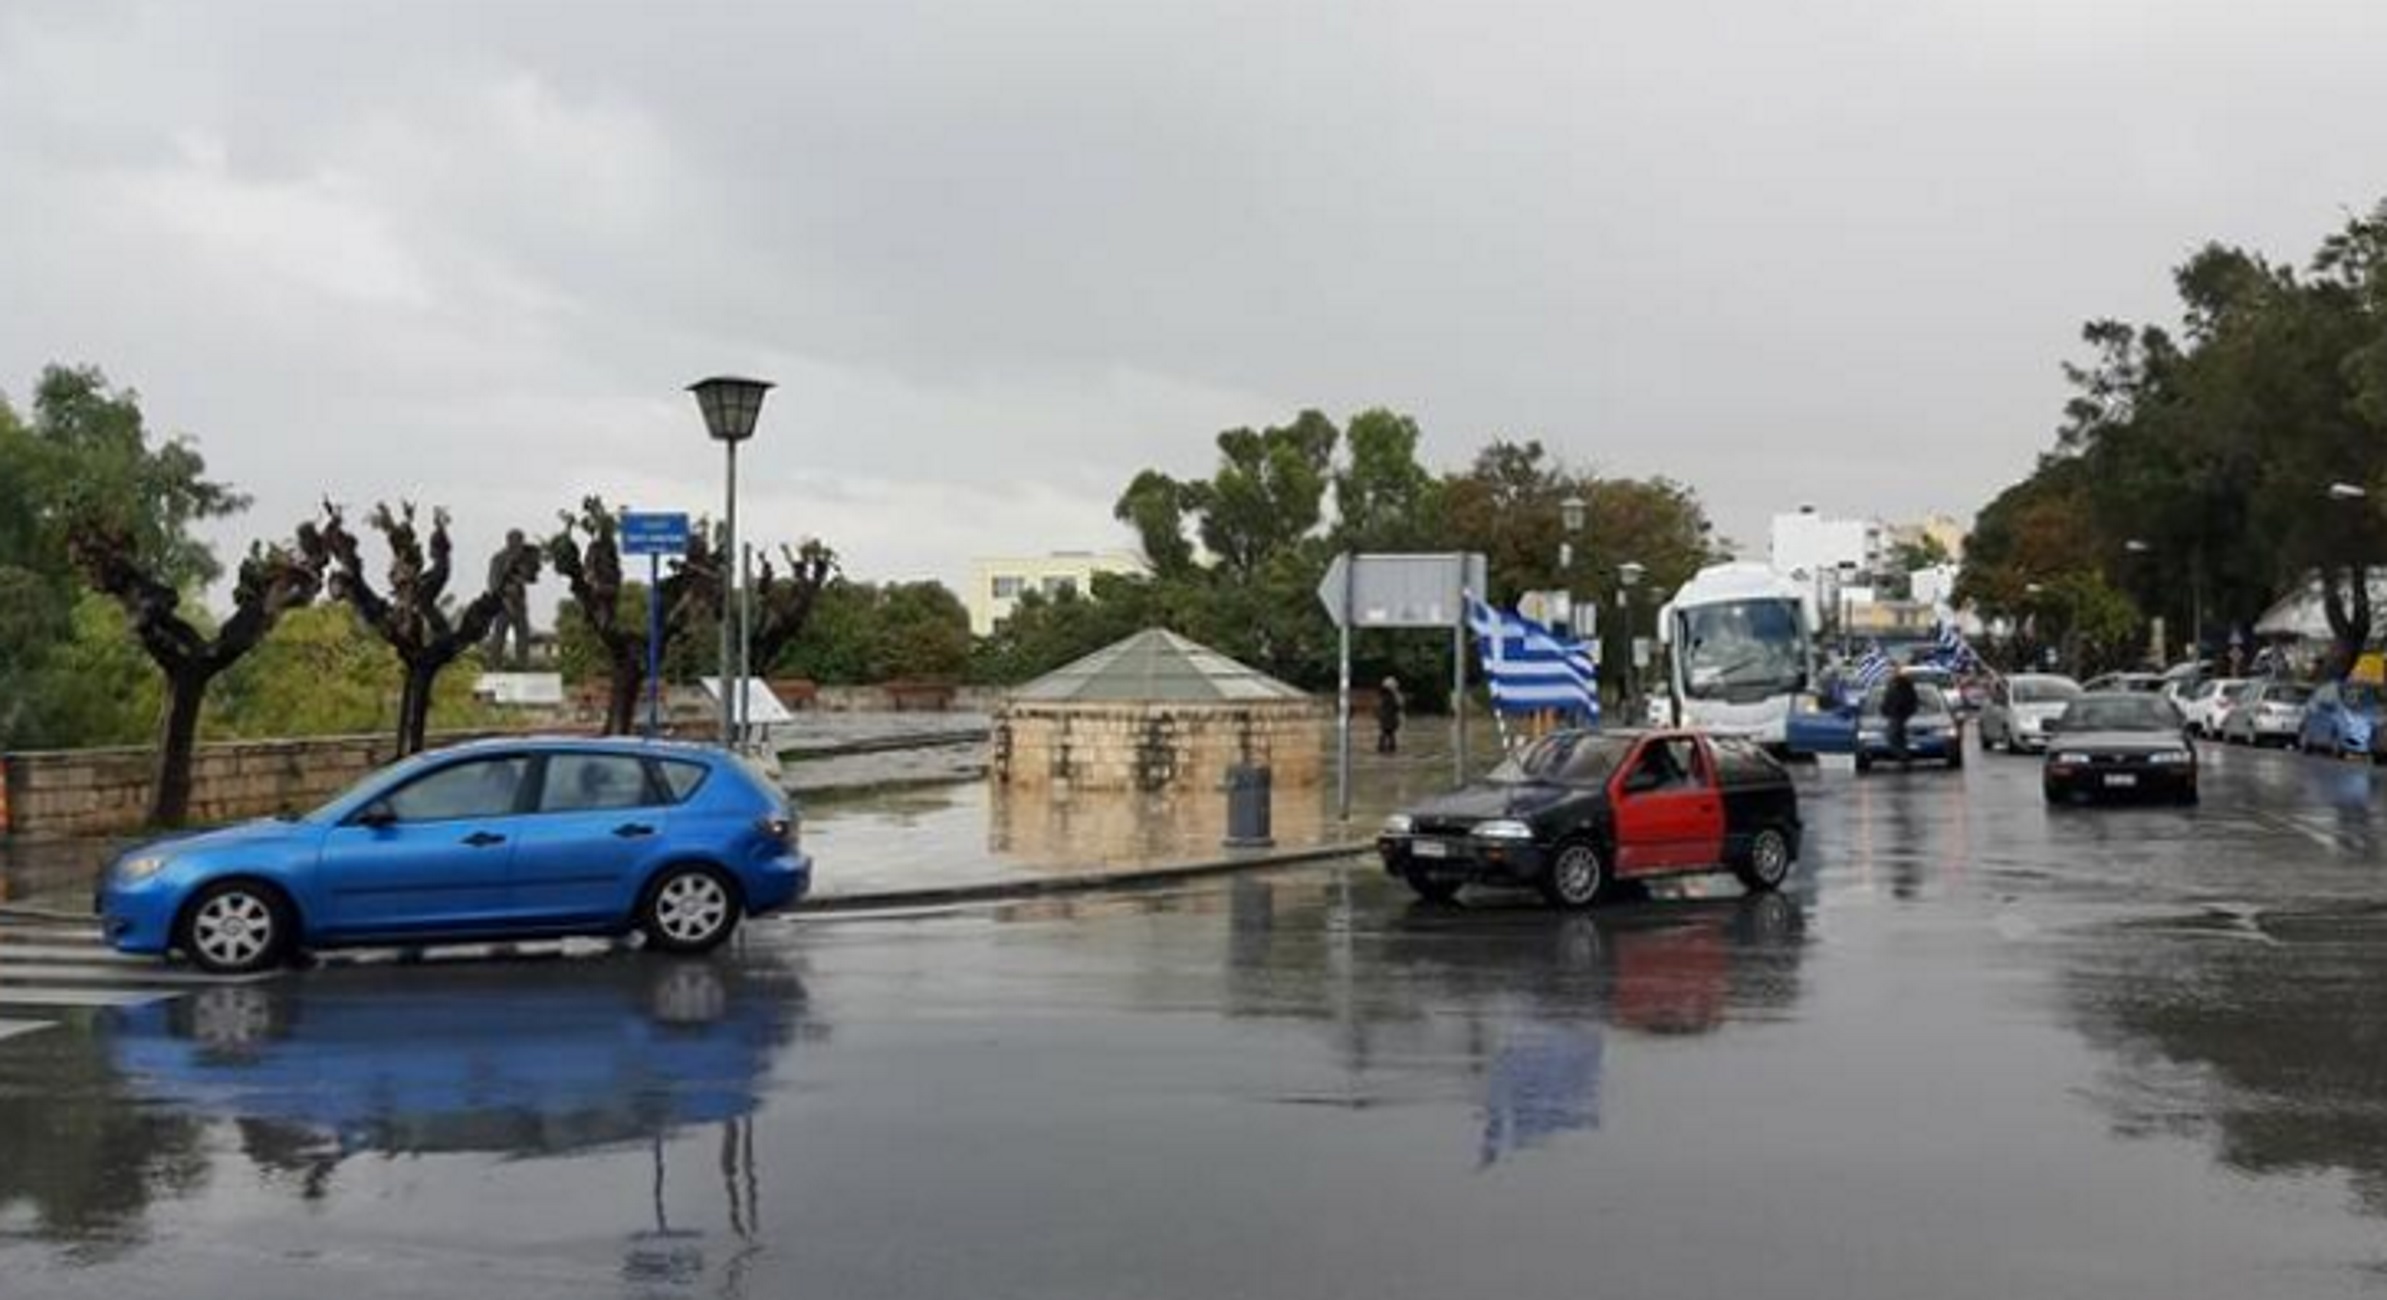 Ηράκλειο: Κέντρισε τα βλέμματα η μηχανοκίνητη παρέλαση! Εικόνες ντροπής στο μνημείο του Άγνωστου Στρατιώτη